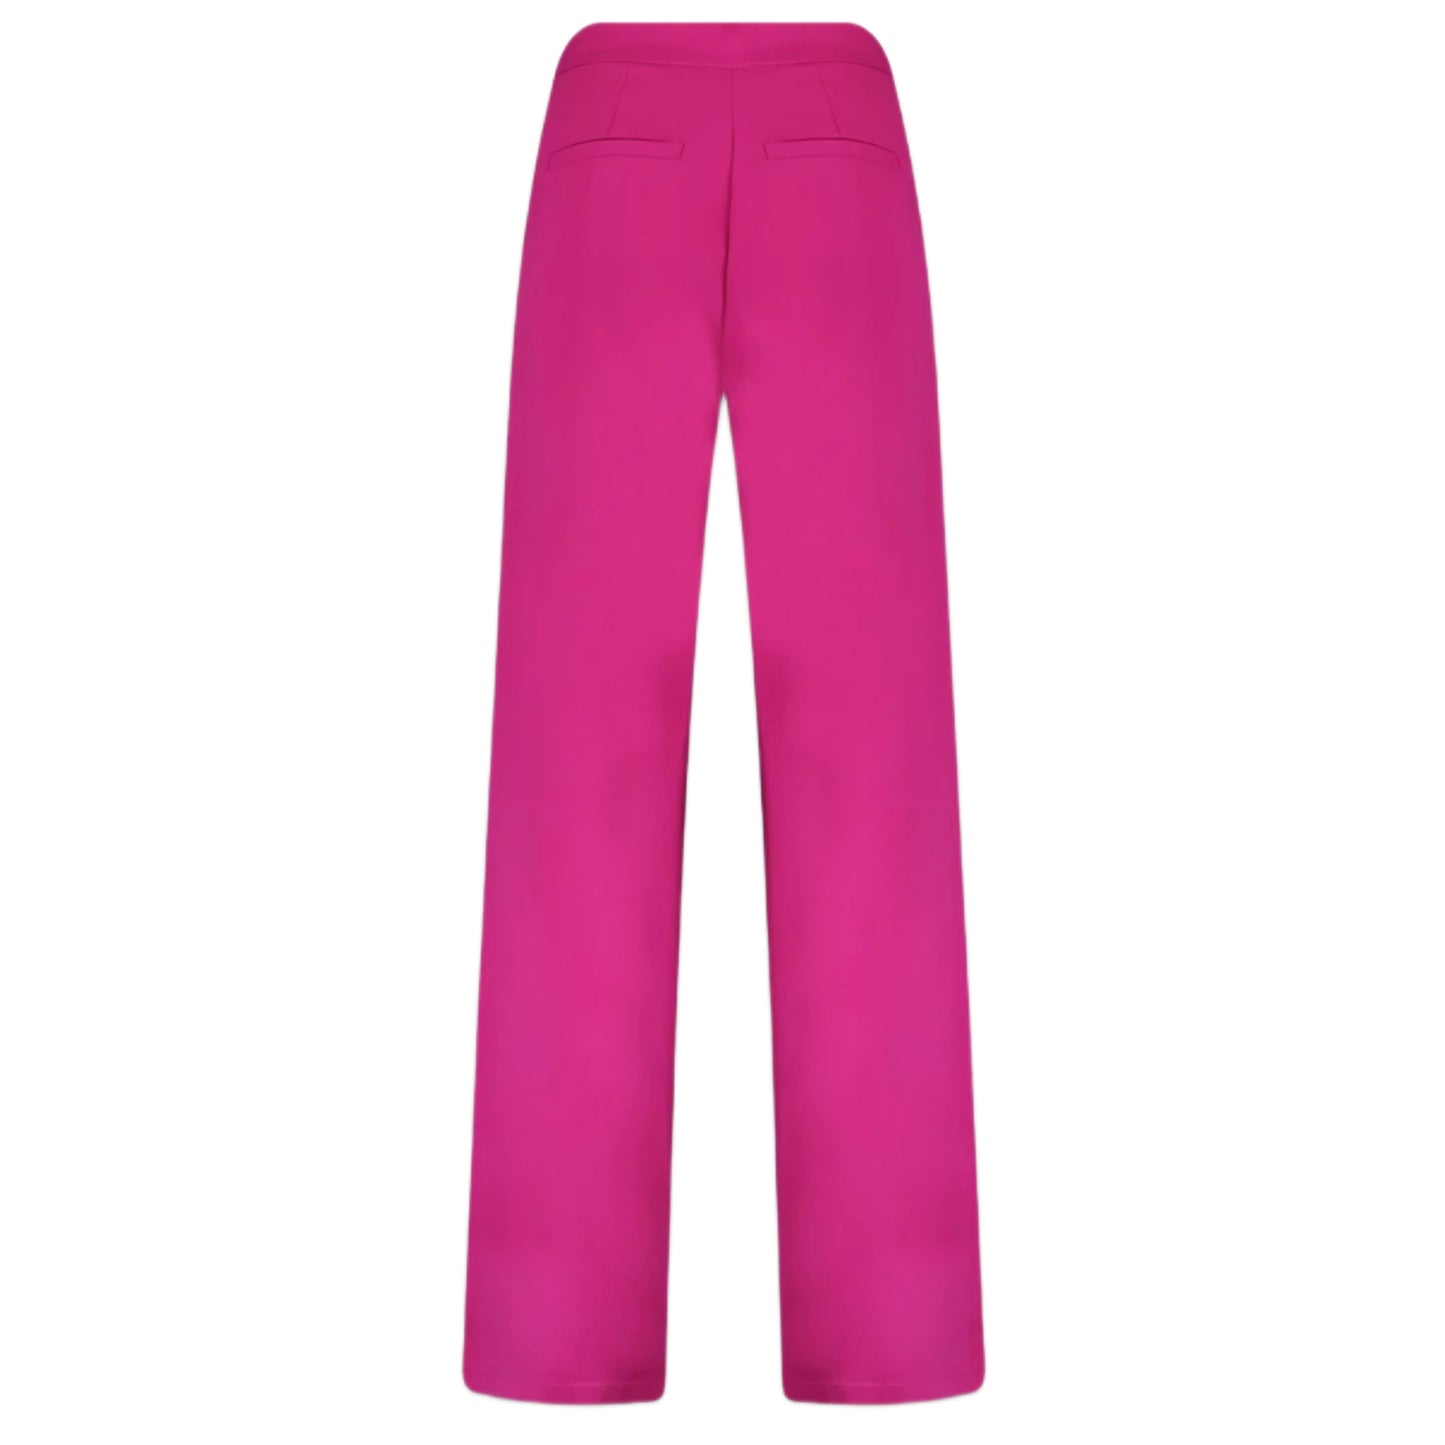 Harper & Yve Pantalon Rosie Fuchsia - Peet kleding